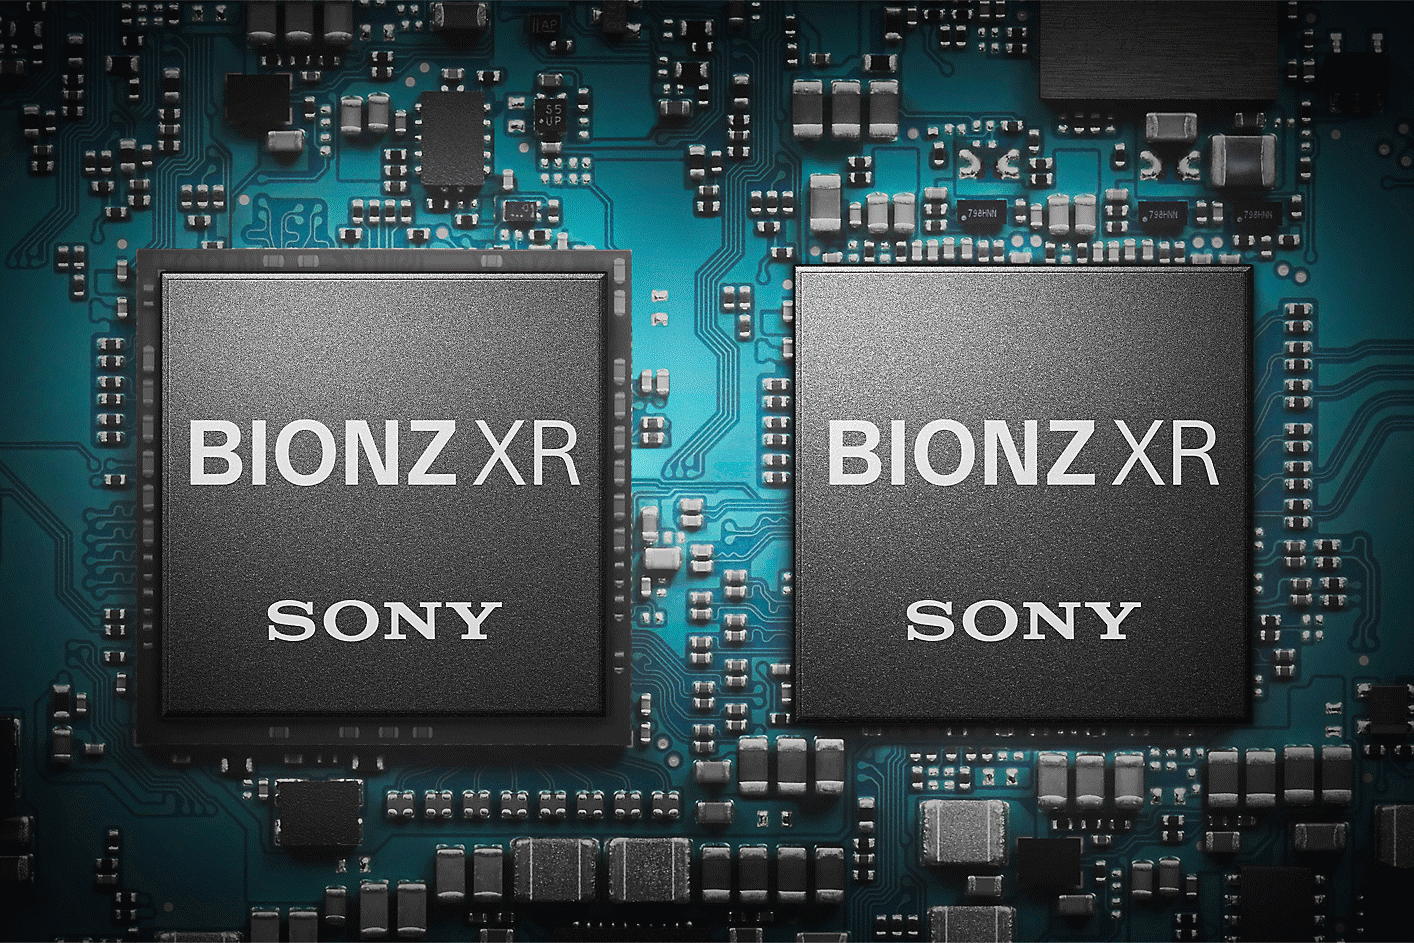 Abbildung des BIONZ XR Bildprozessors am Gerät